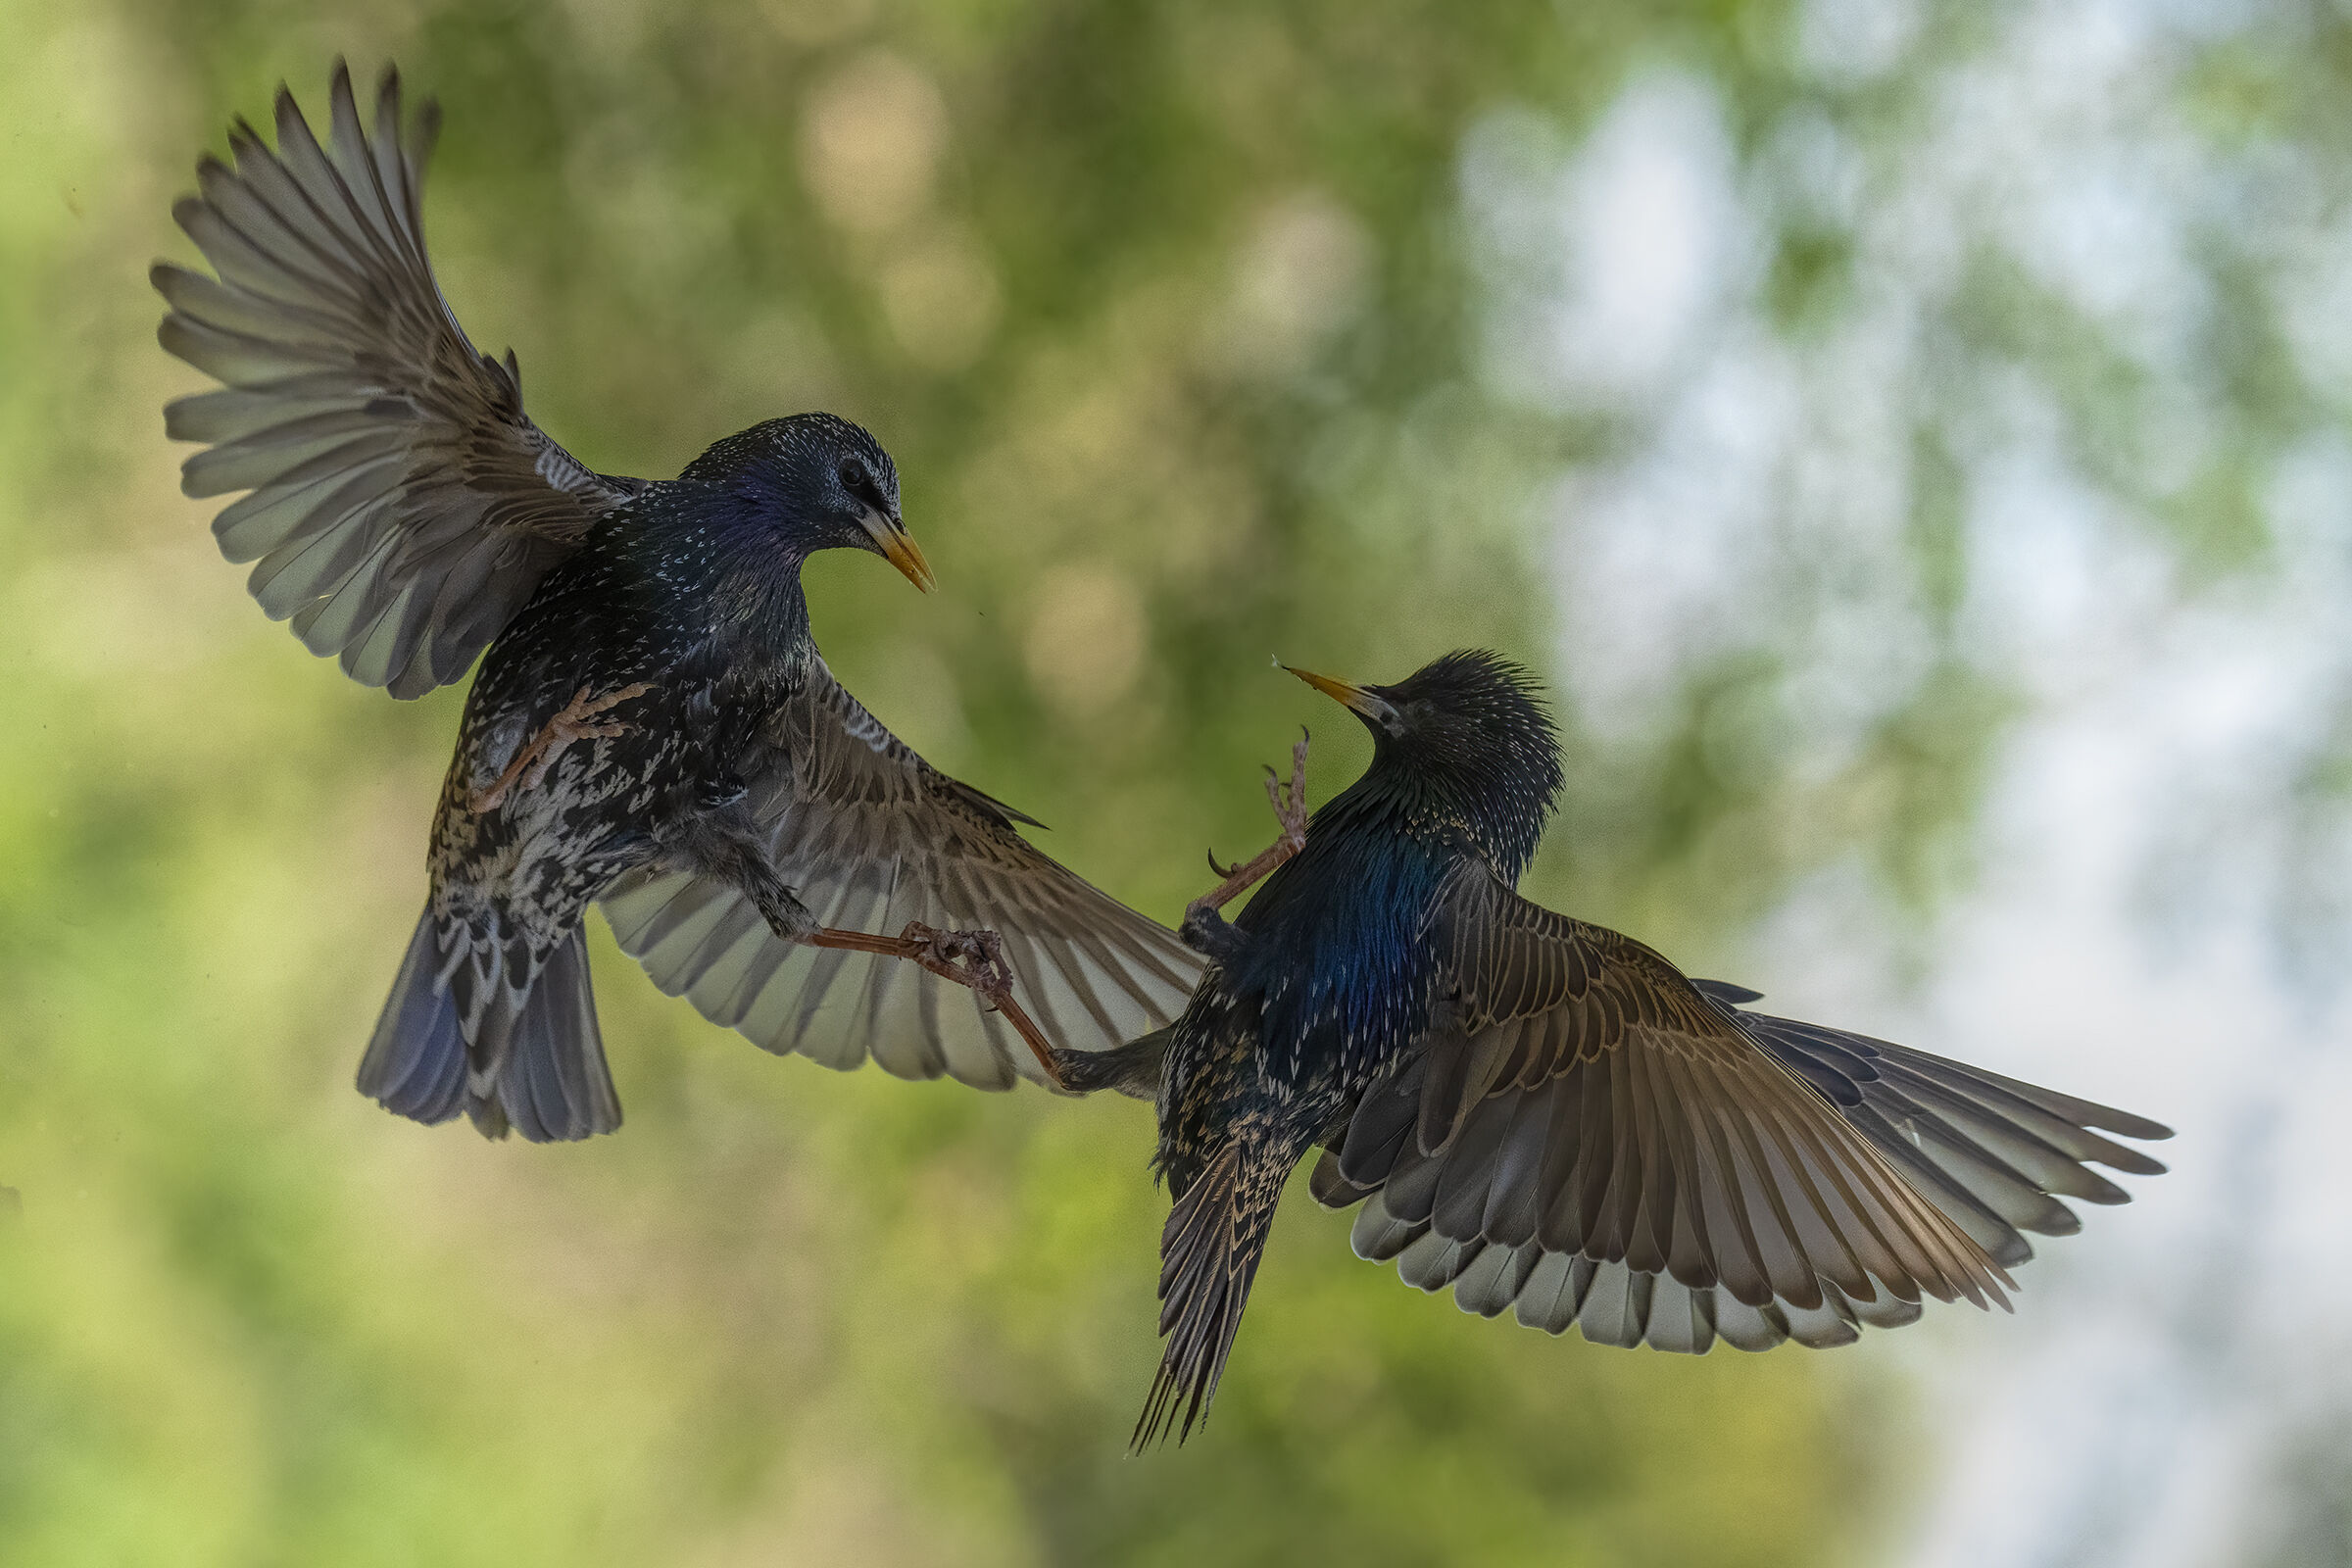 starlings in battle ...